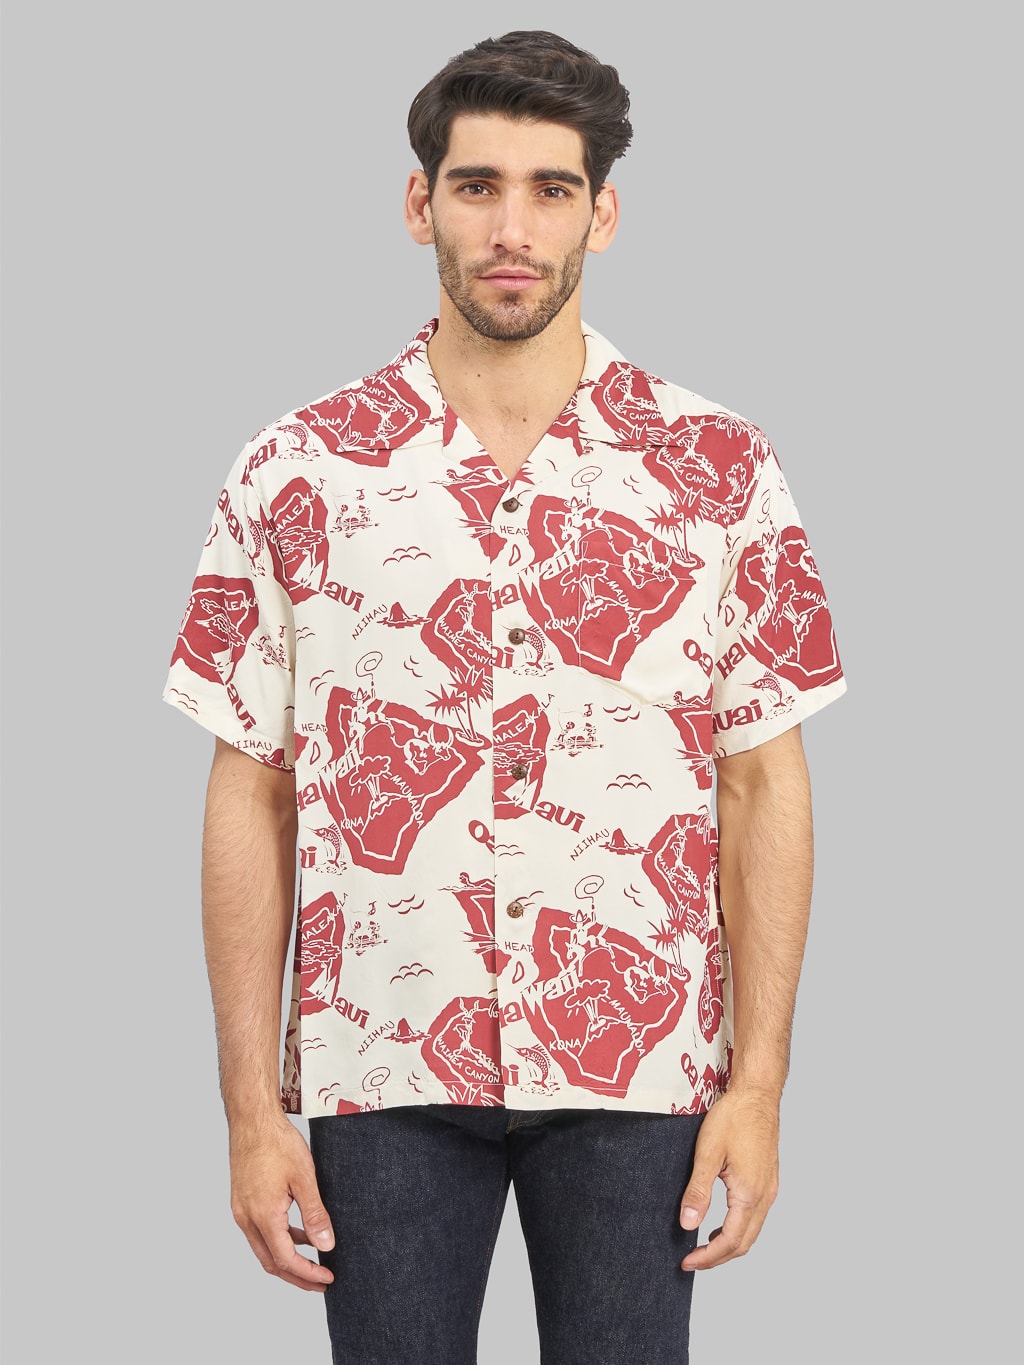 sun surf hawaiian shirt showing hawaiian island look